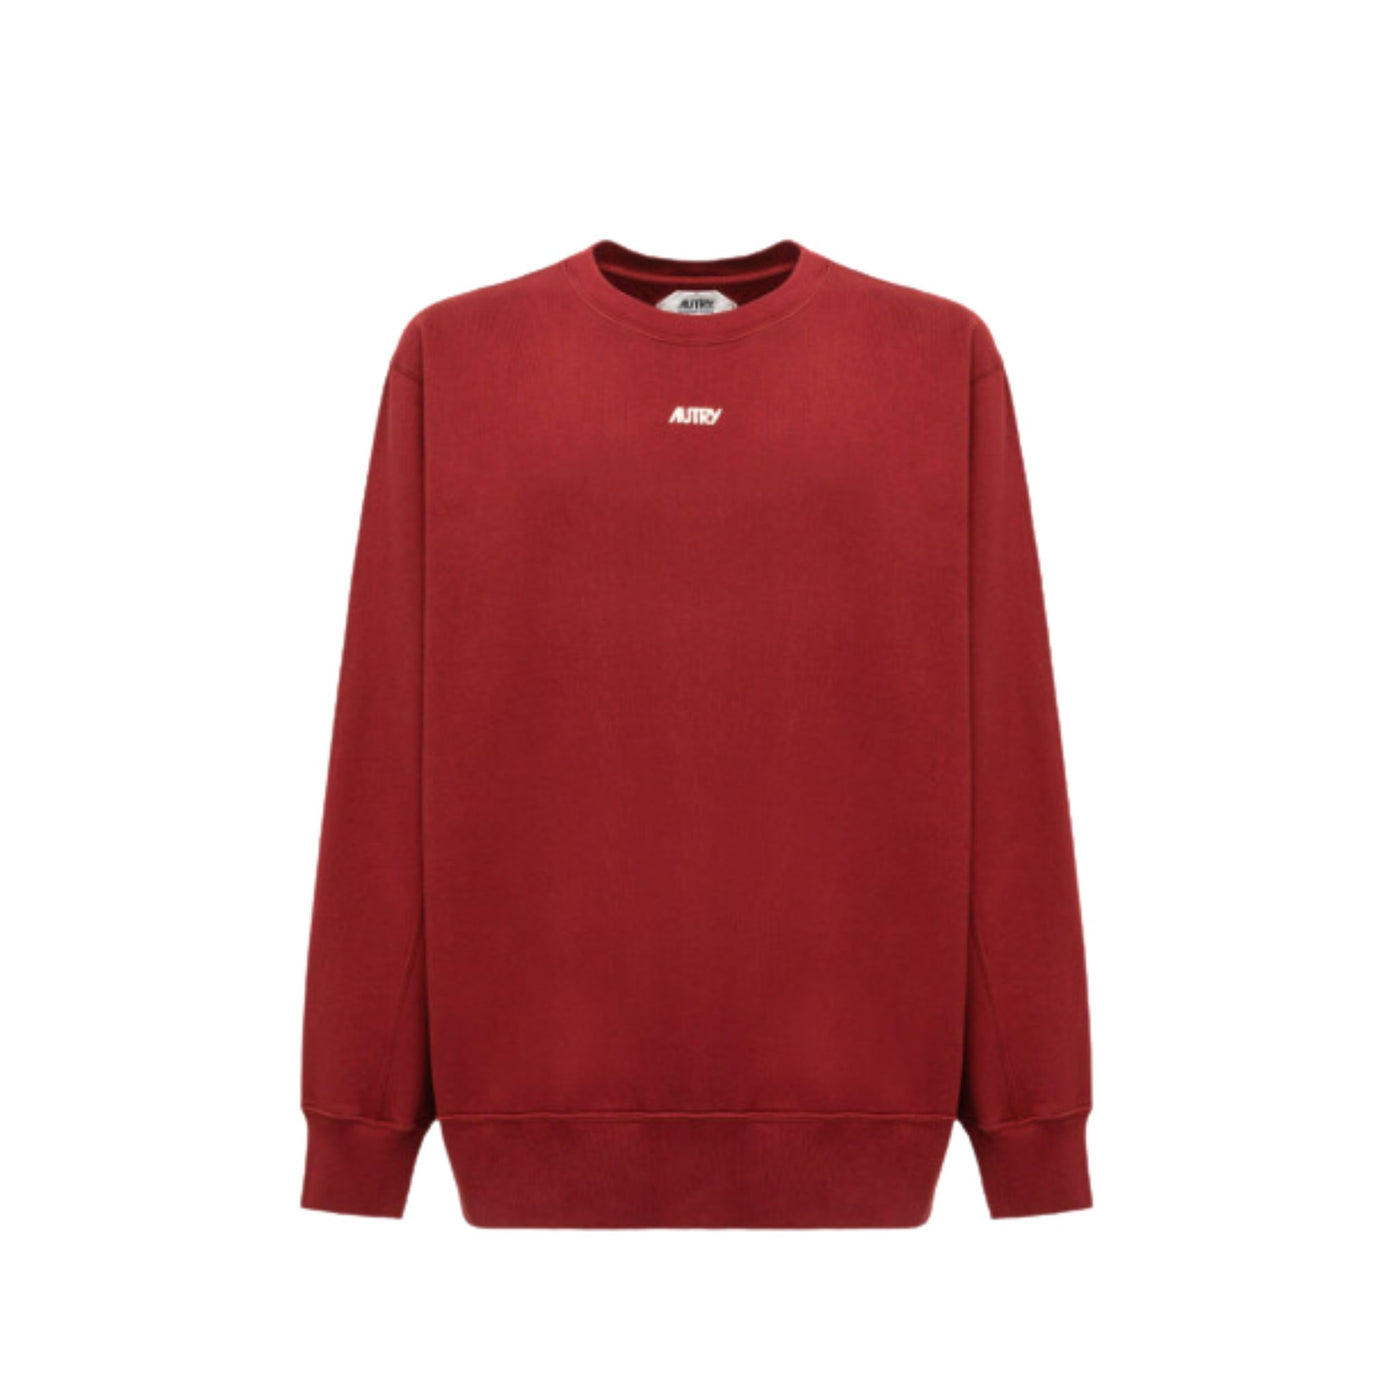 Men's sweatshirt in pure red cotton